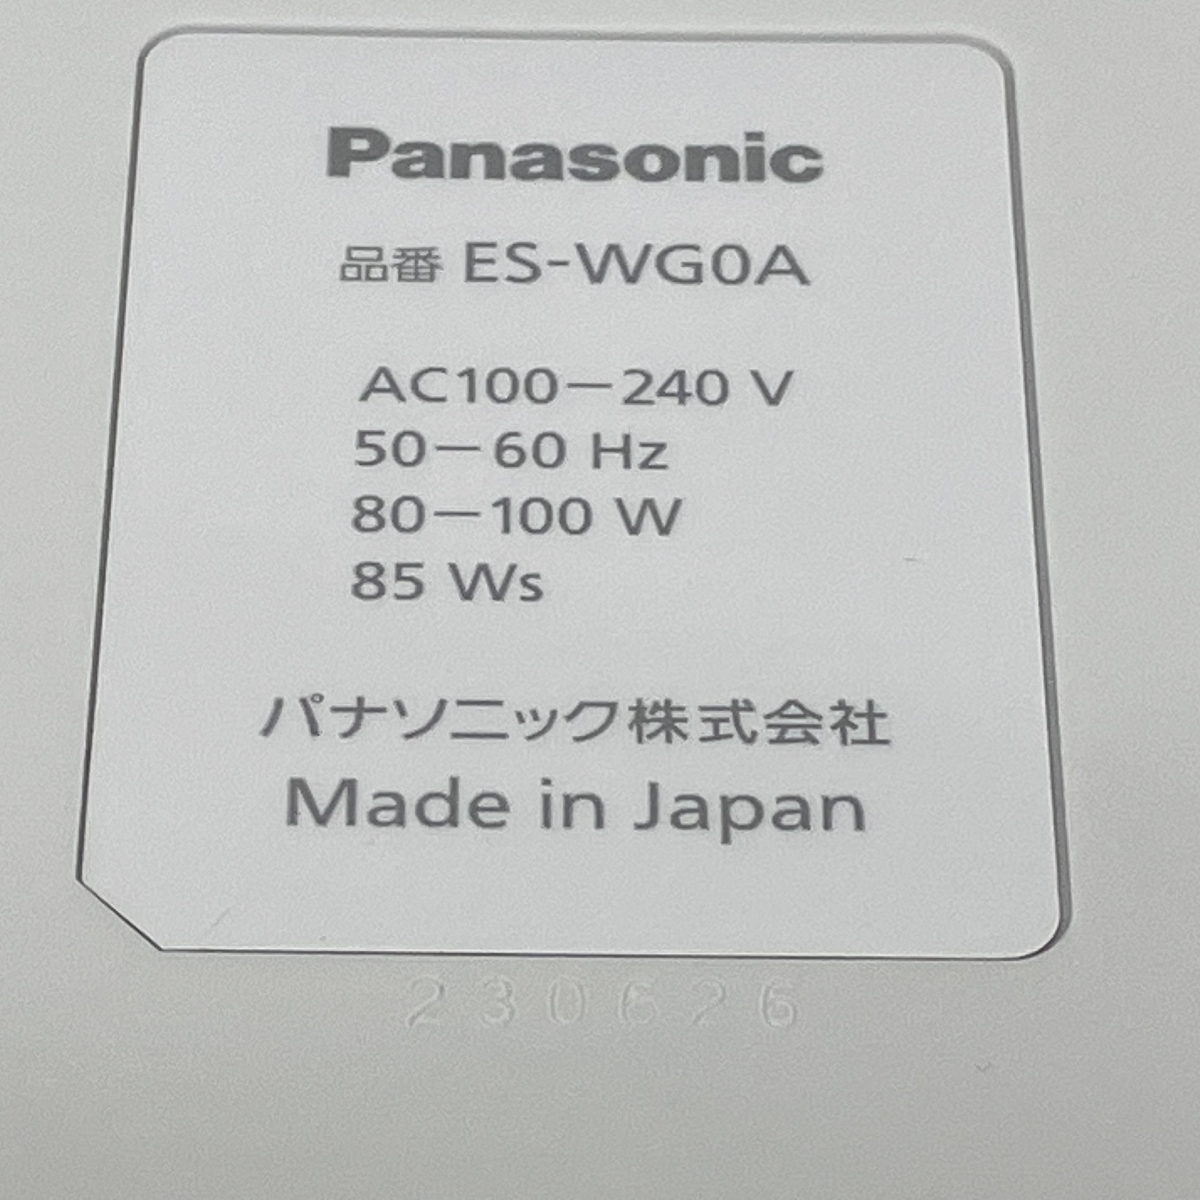 [ гарантия работы ]Panasonic свет Esthe гладкий epi ES-WG0A-H депилятор SMOOTHEPI Panasonic б/у прекрасный товар K8855776